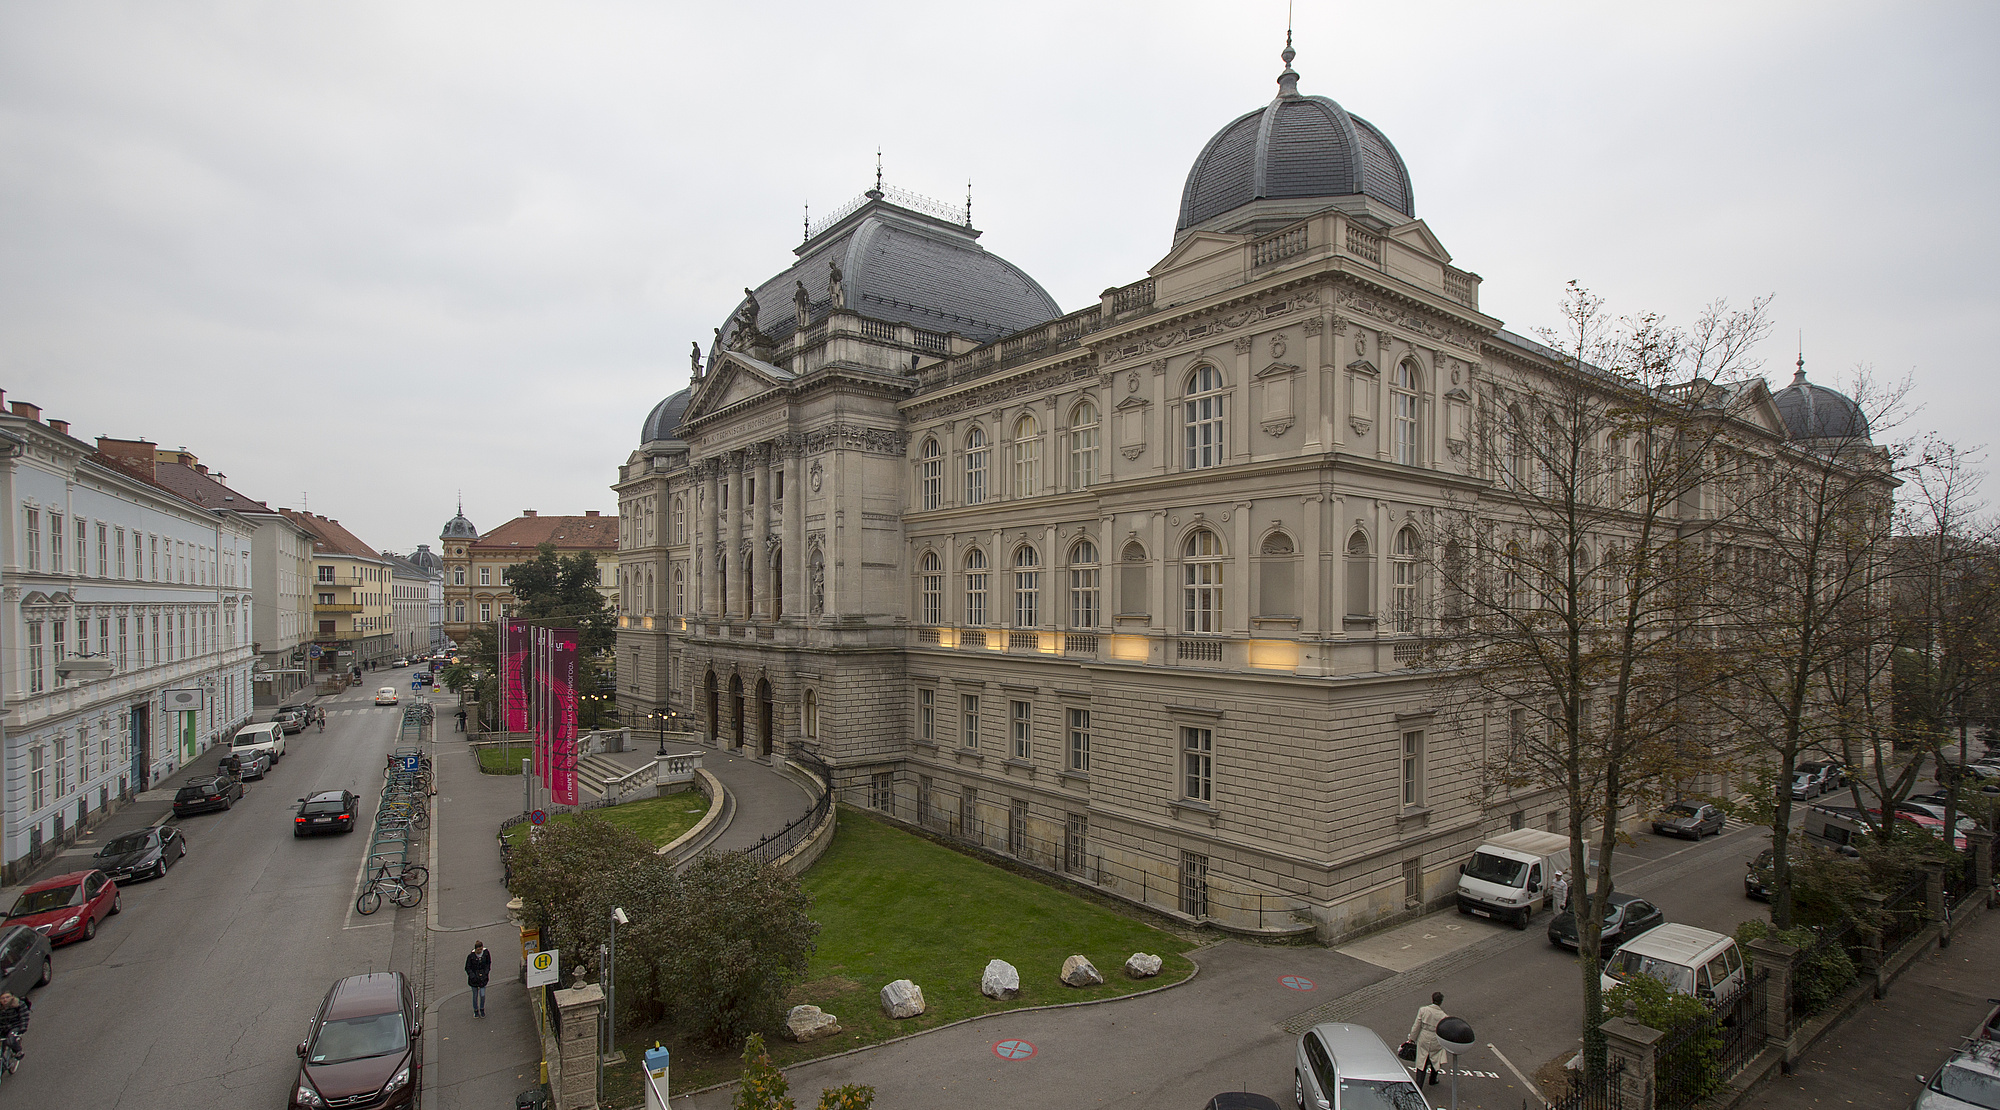 Photos of the campus locations TU Graz